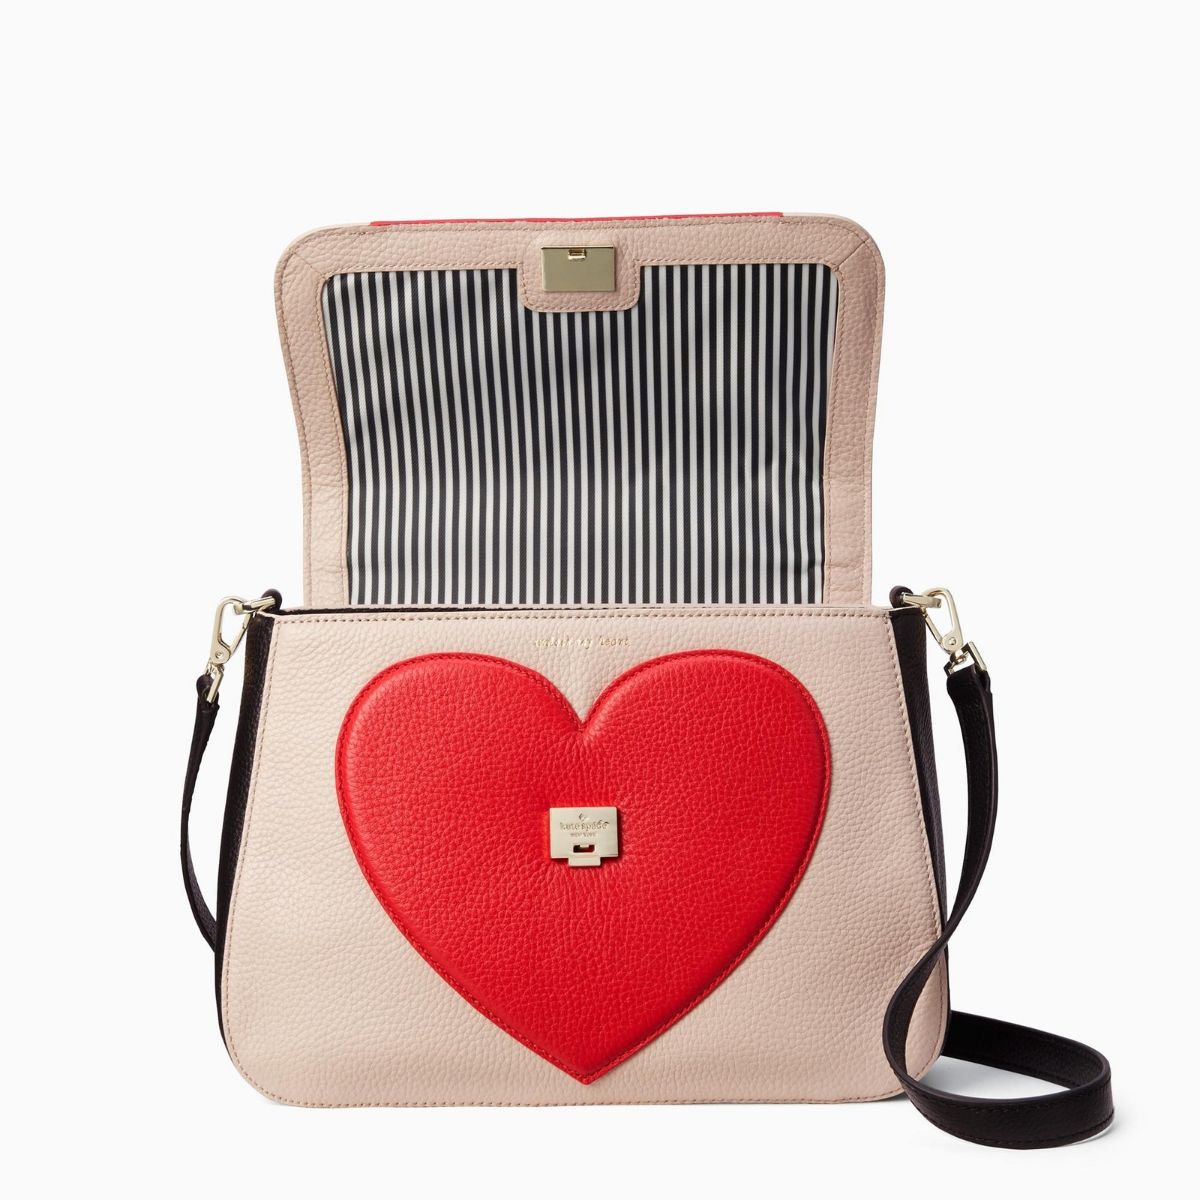 How Alaïa's Heart Bag Became 2023's Most Romantic It-Bag